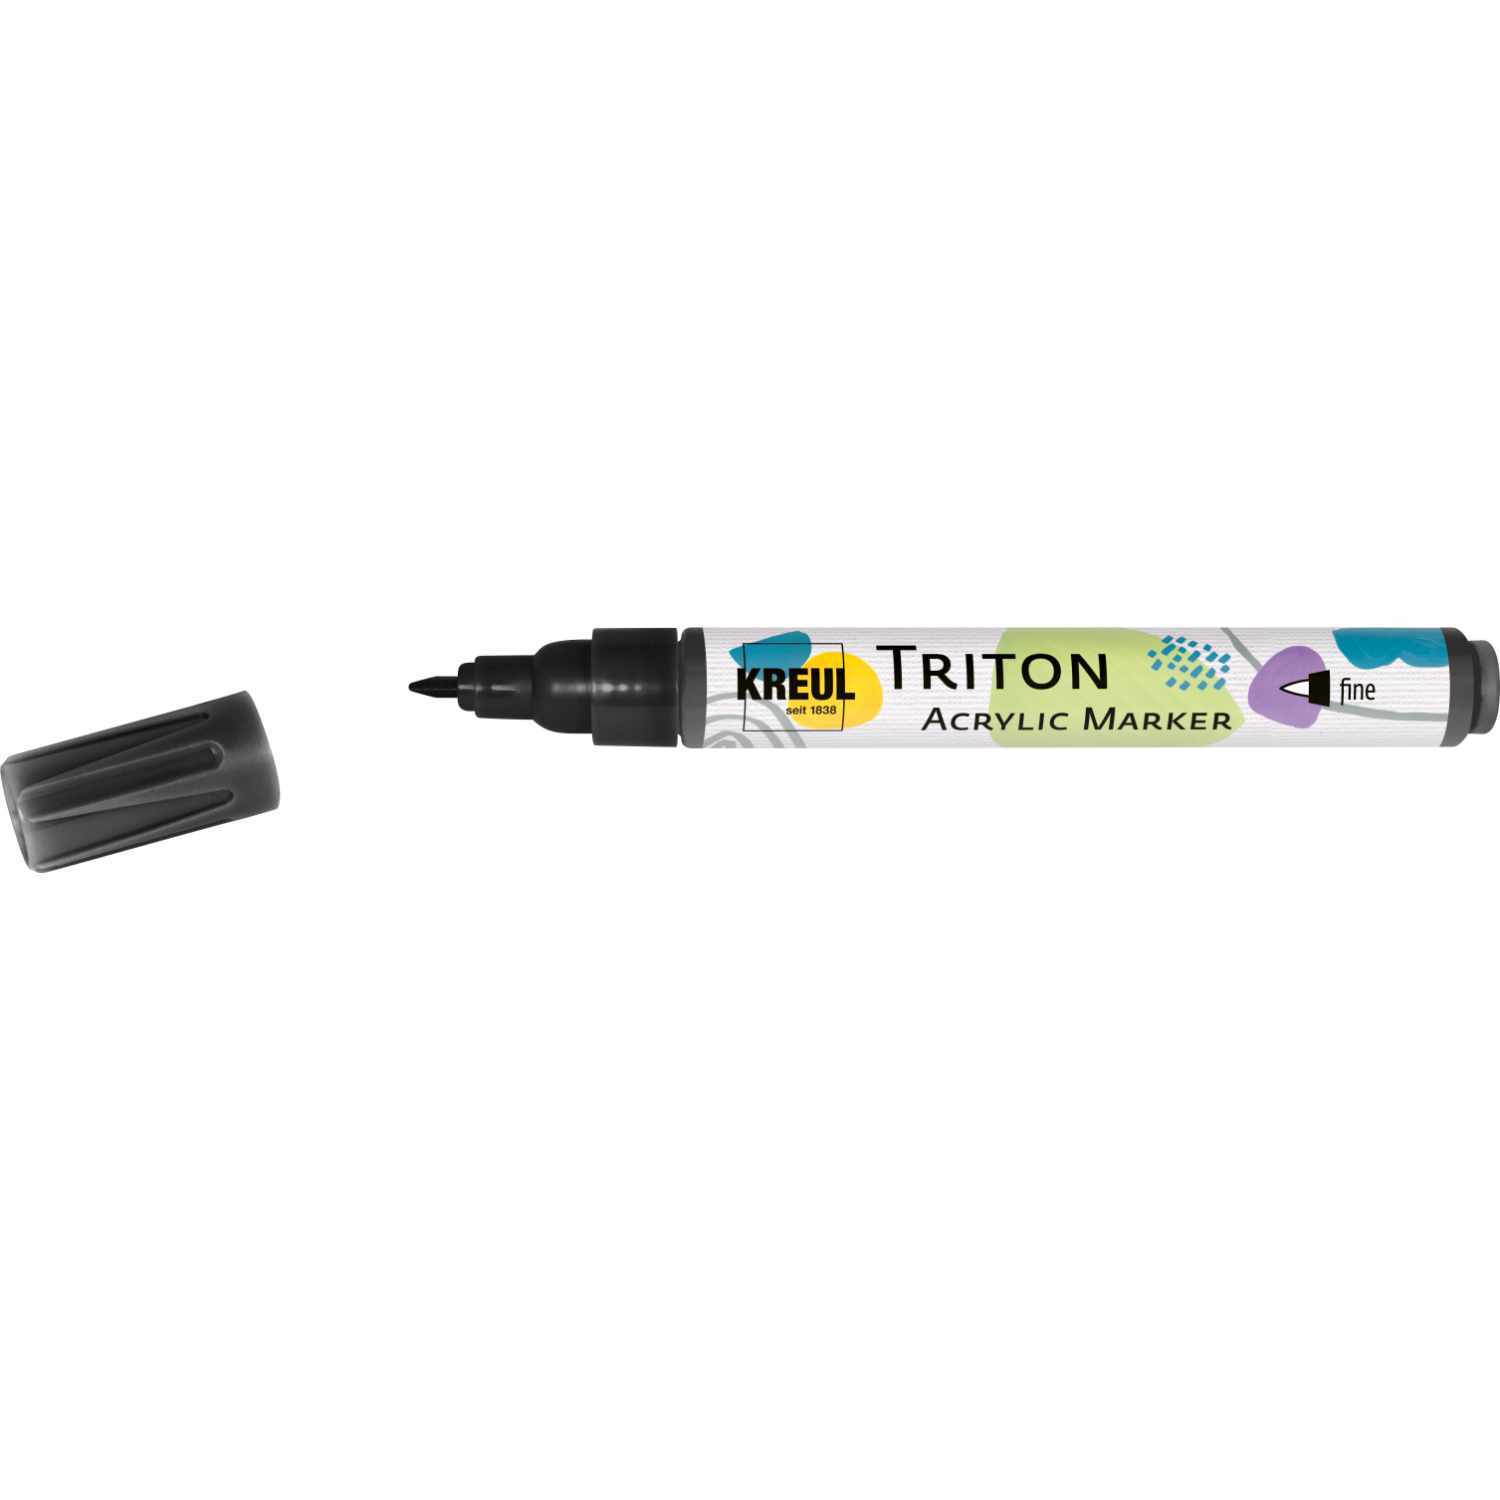 Triton Acrylic Marker fine 1-2mm